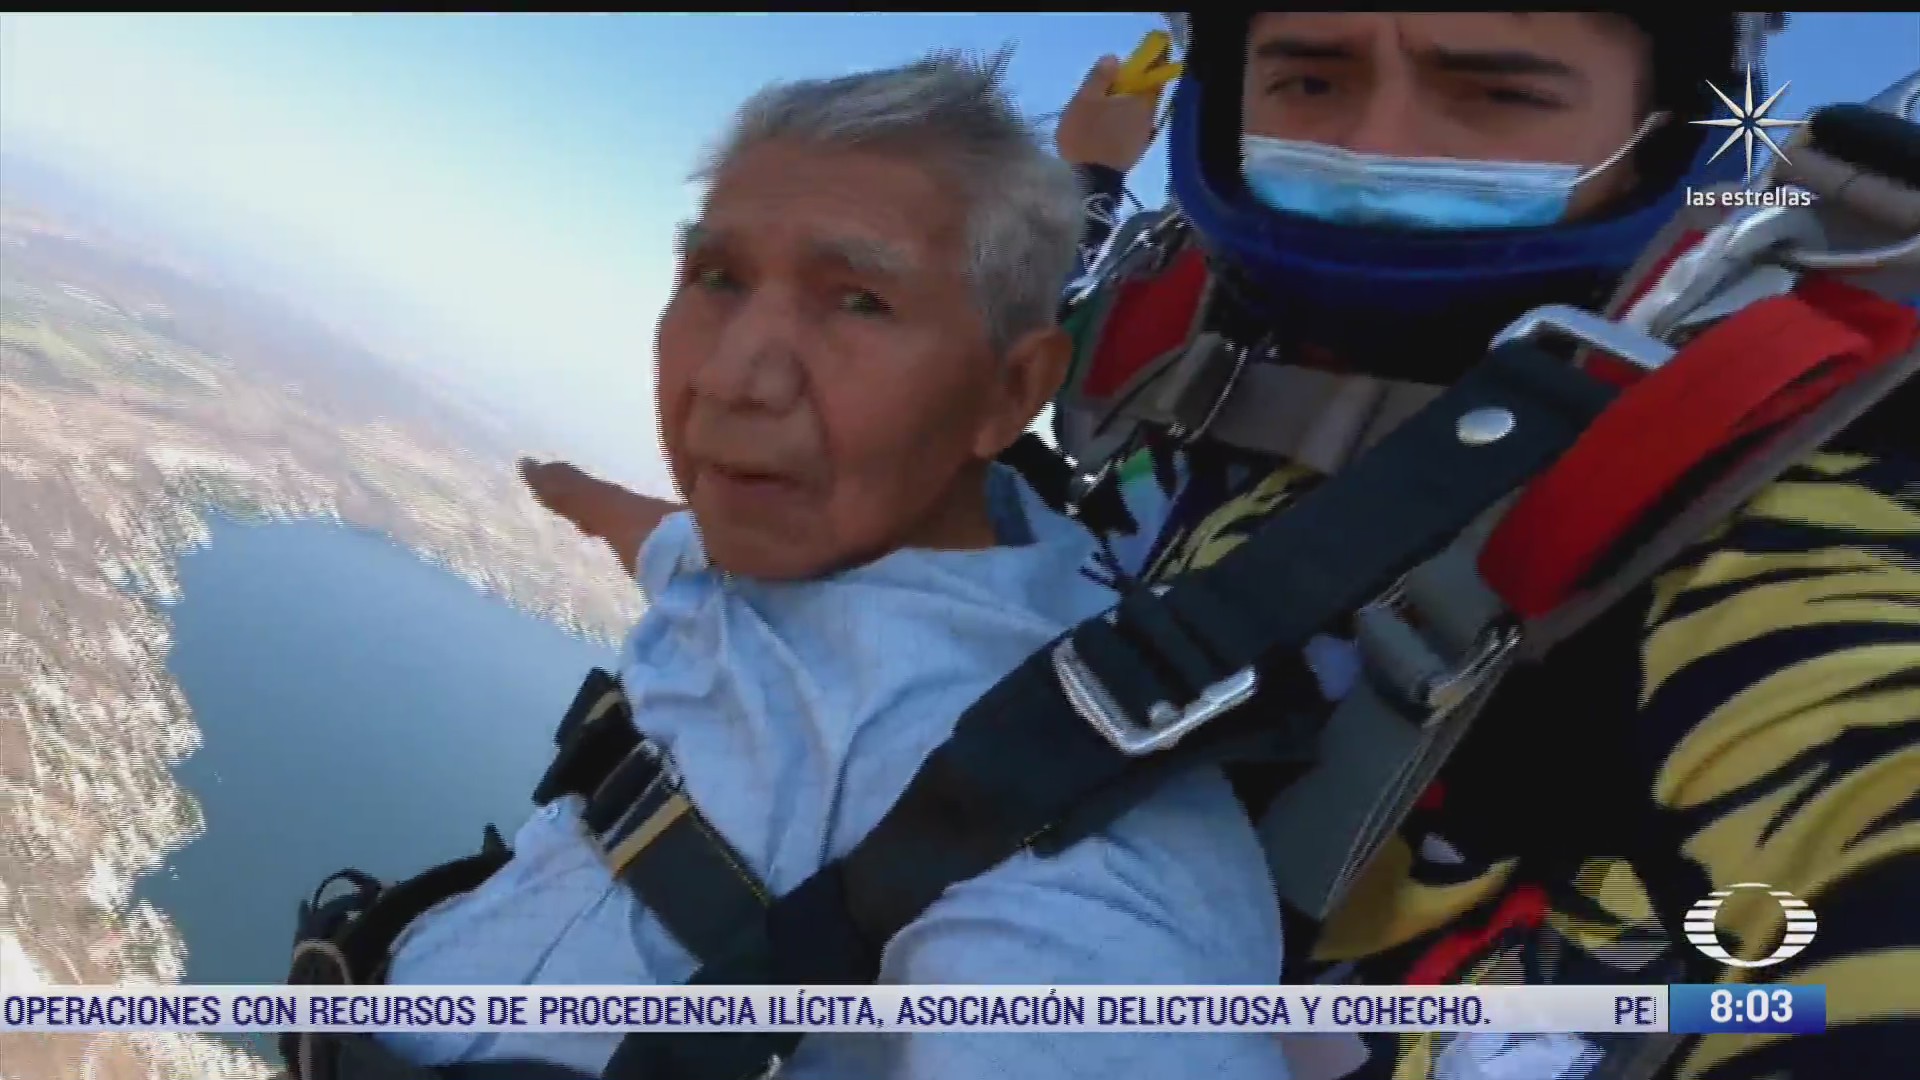 abuelito salta en paracaidas y cumple su sueno